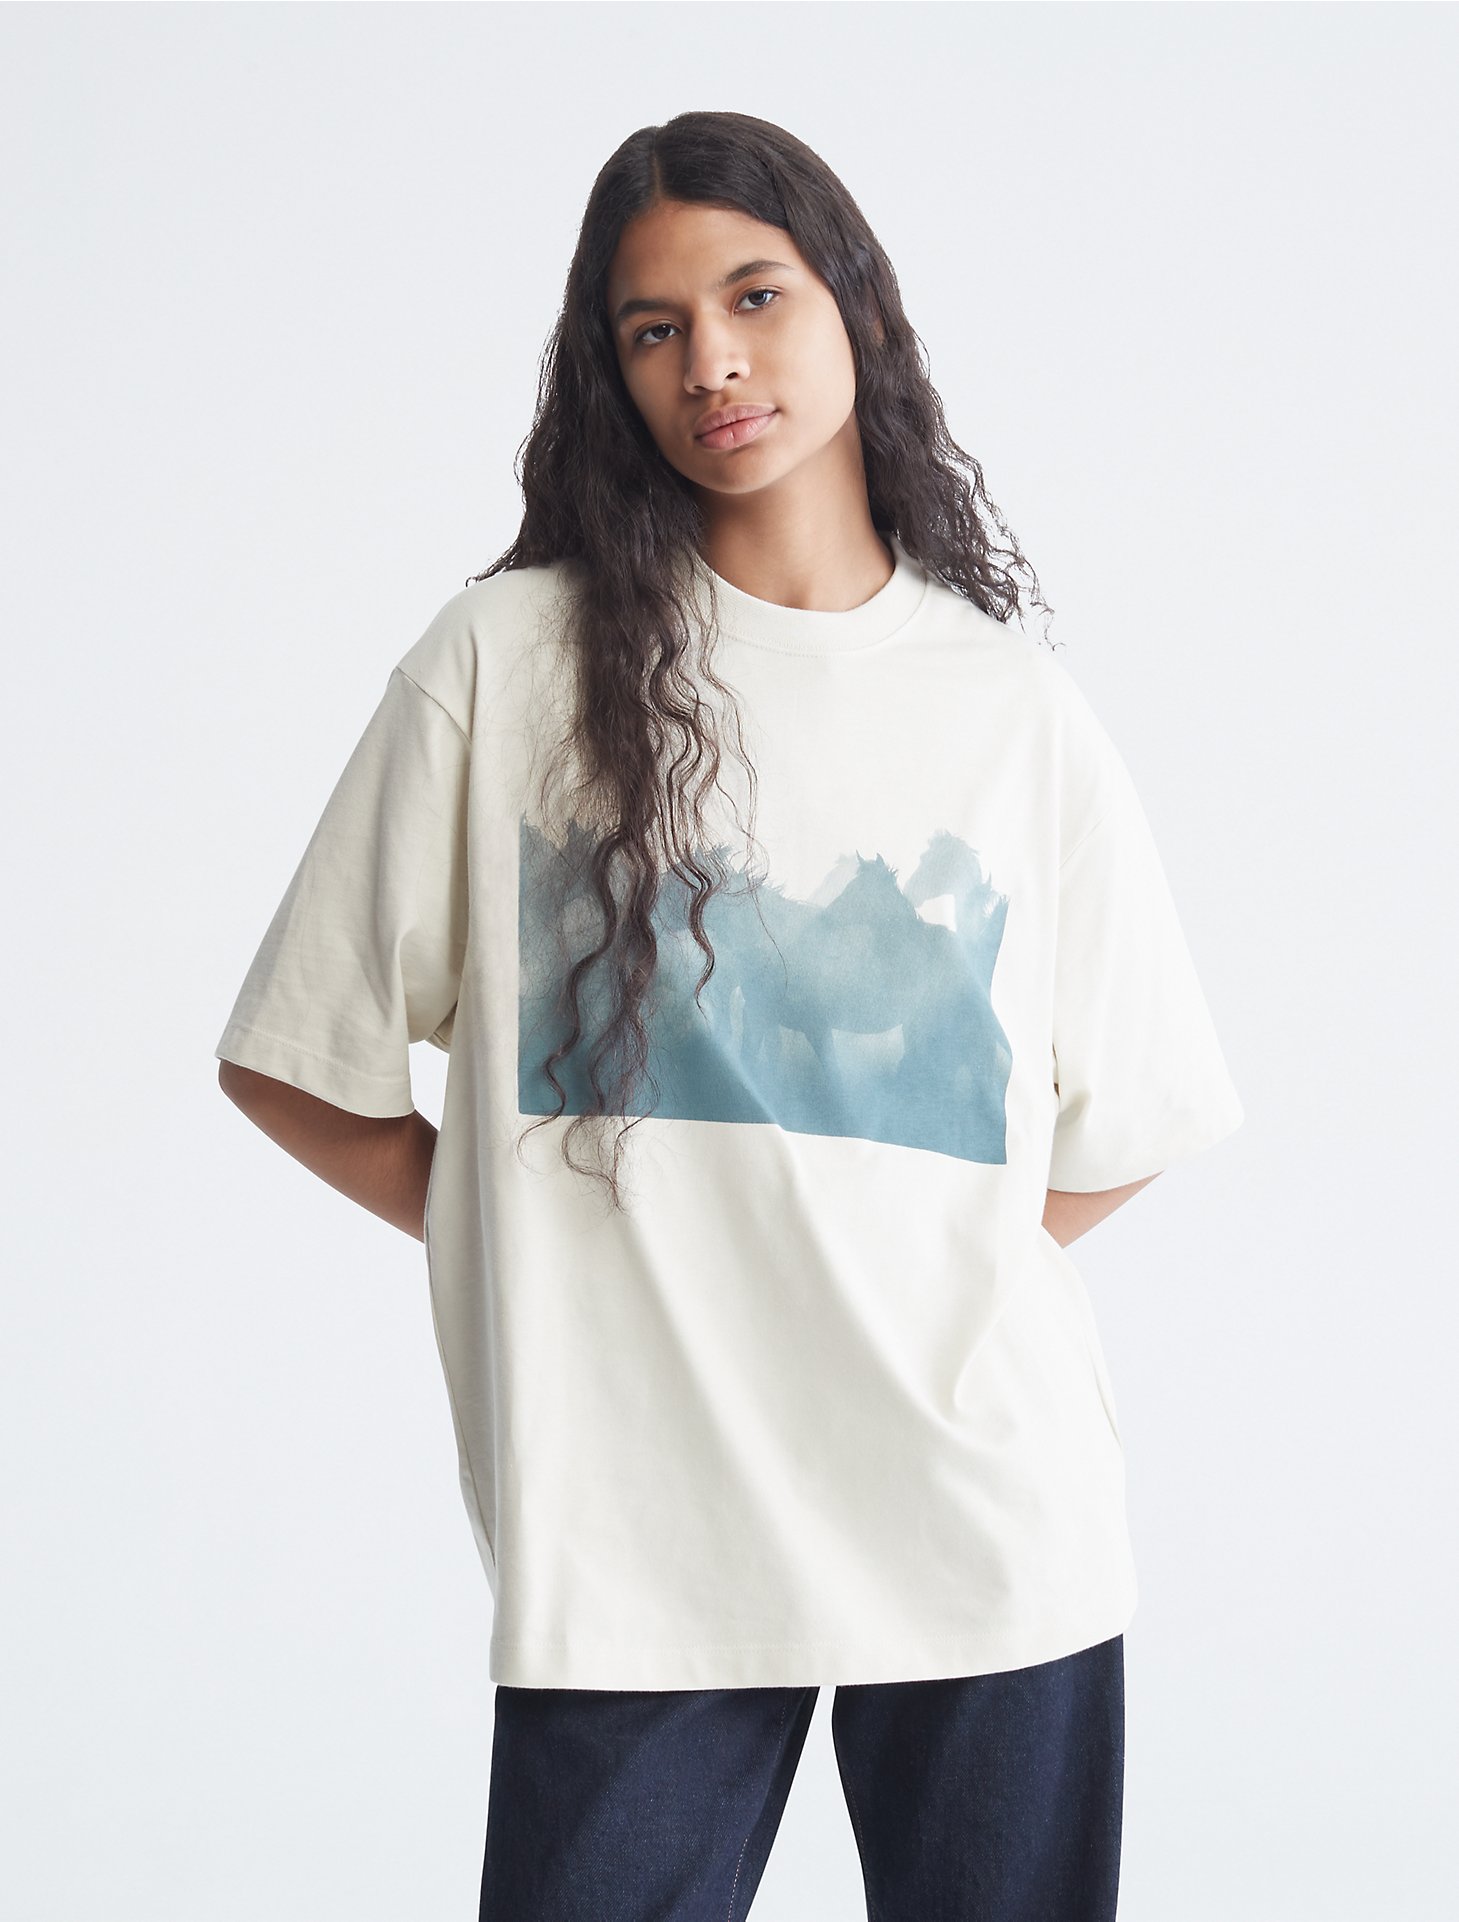 Standards Wrangler Graphic T-Shirt | Calvin Klein